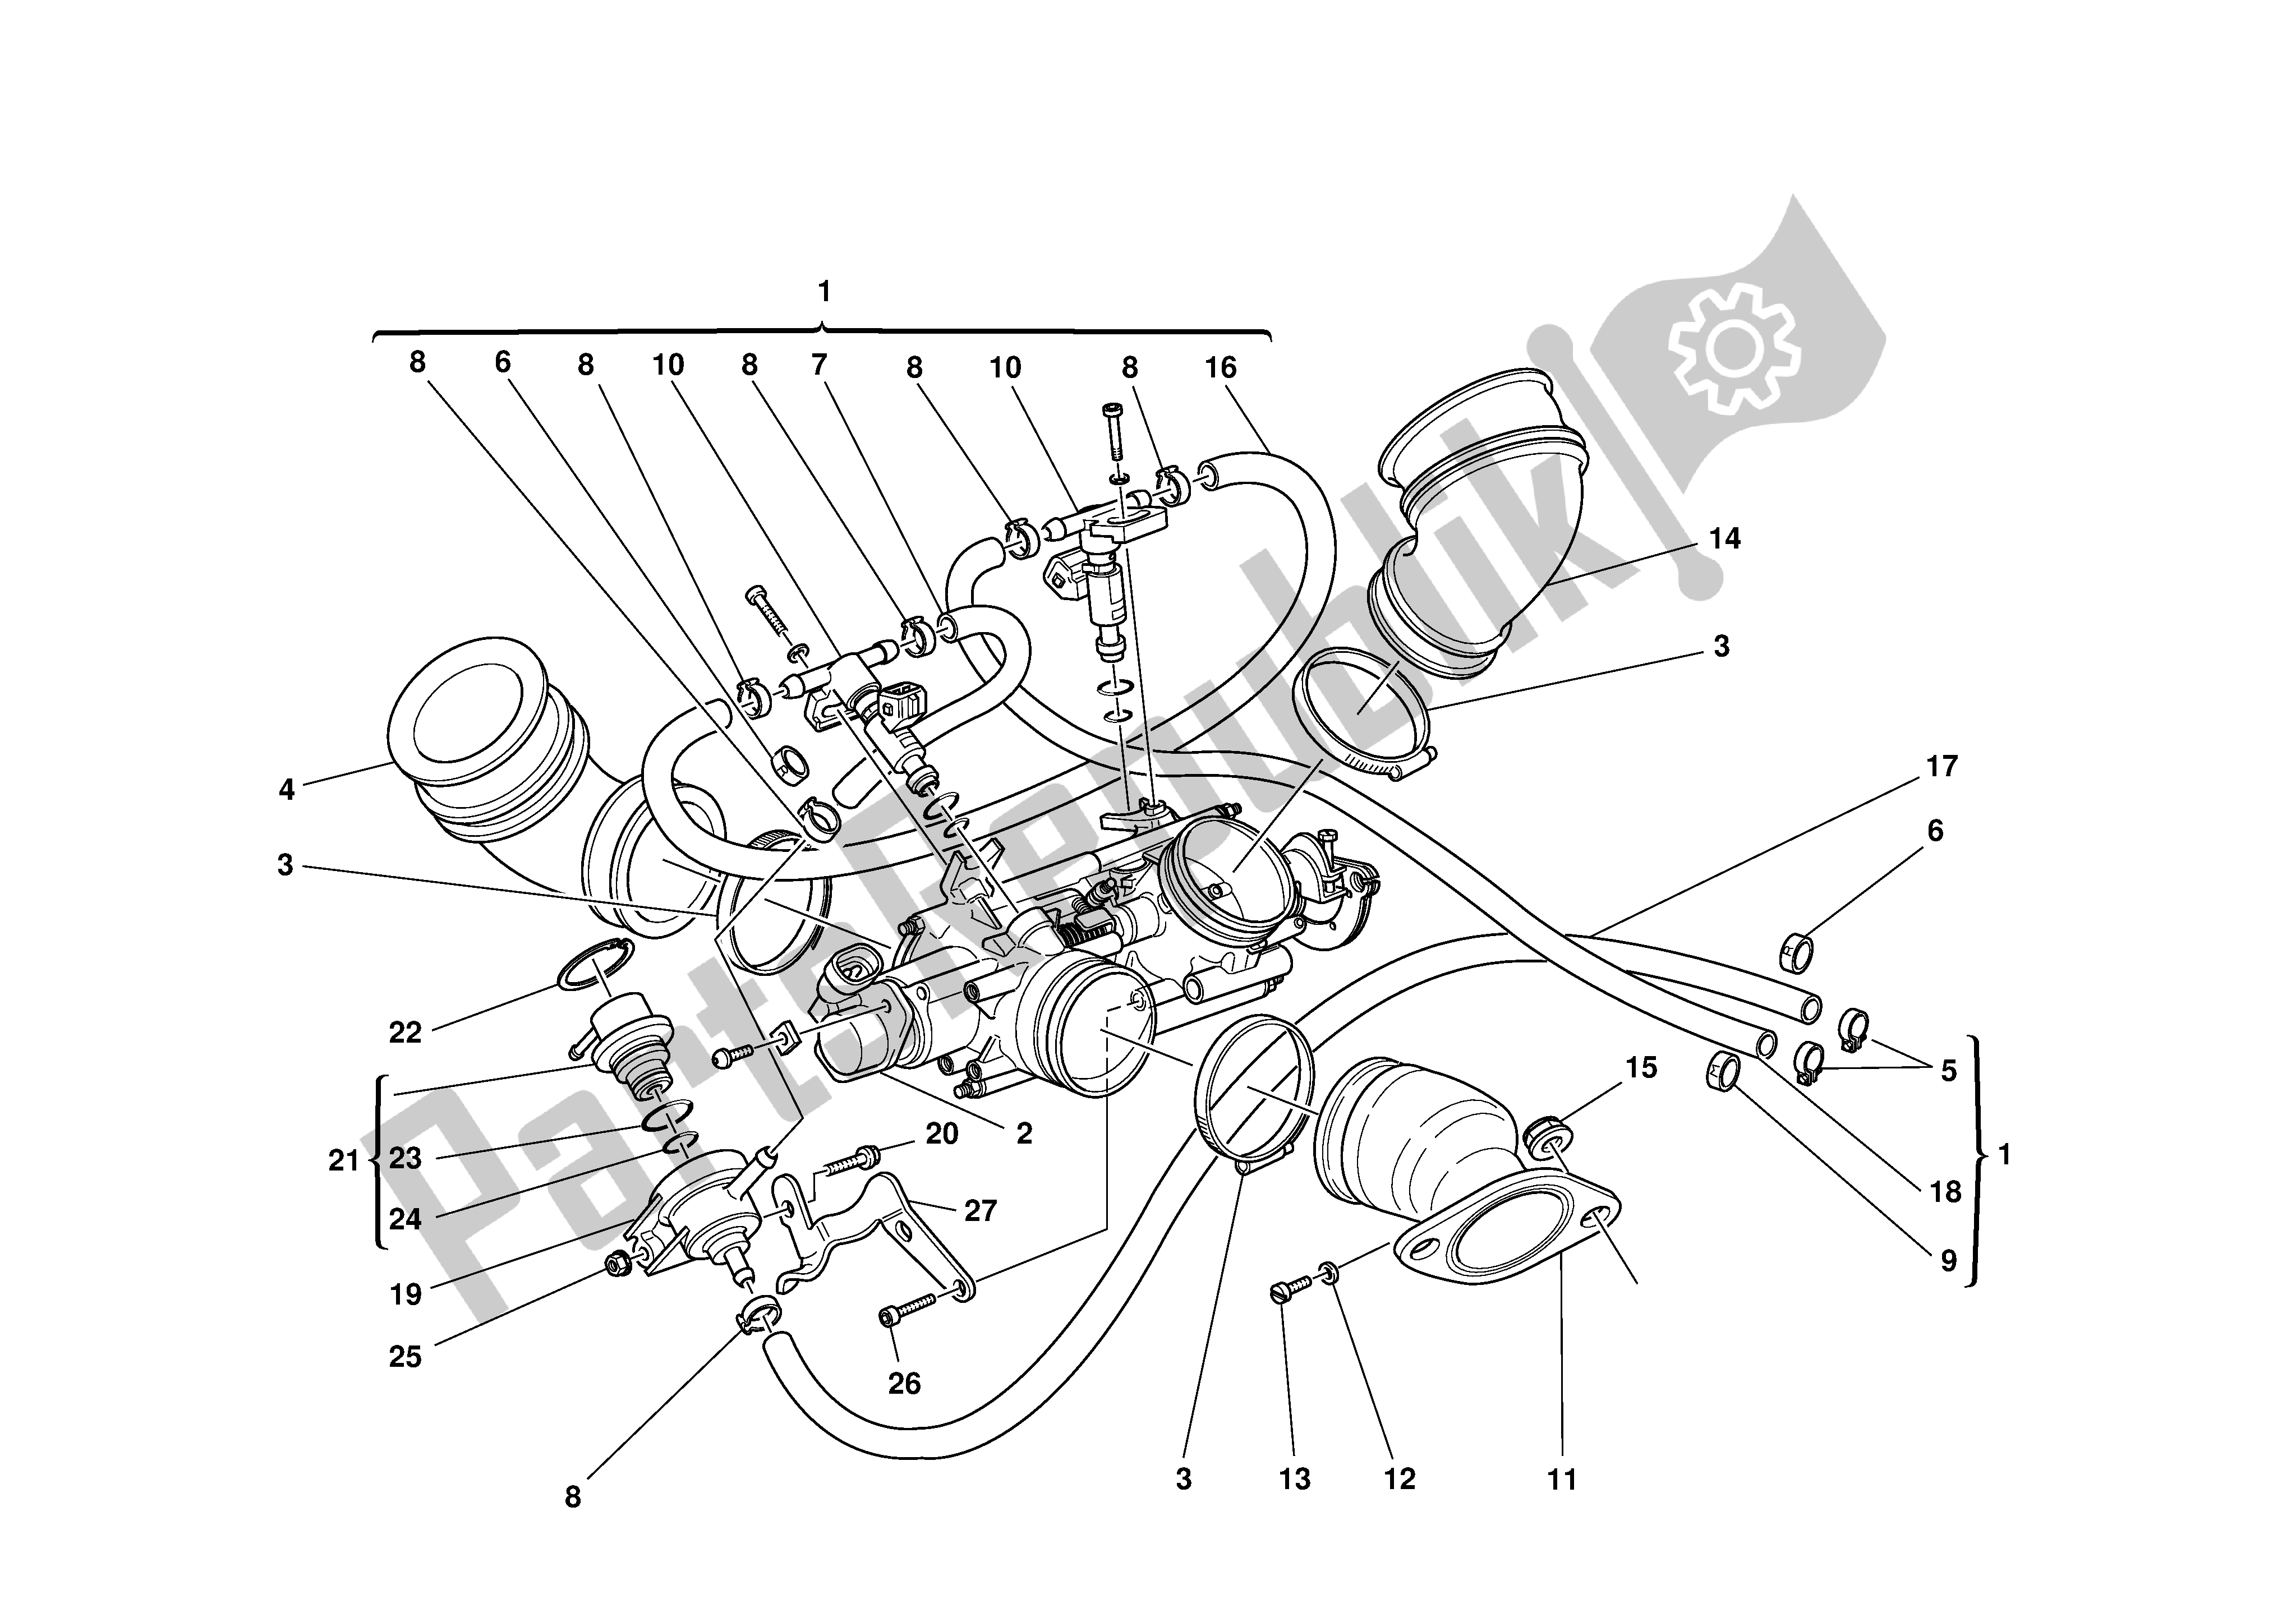 Todas las partes para Entrada Dict de Ducati Monster 900 2000 - 2002